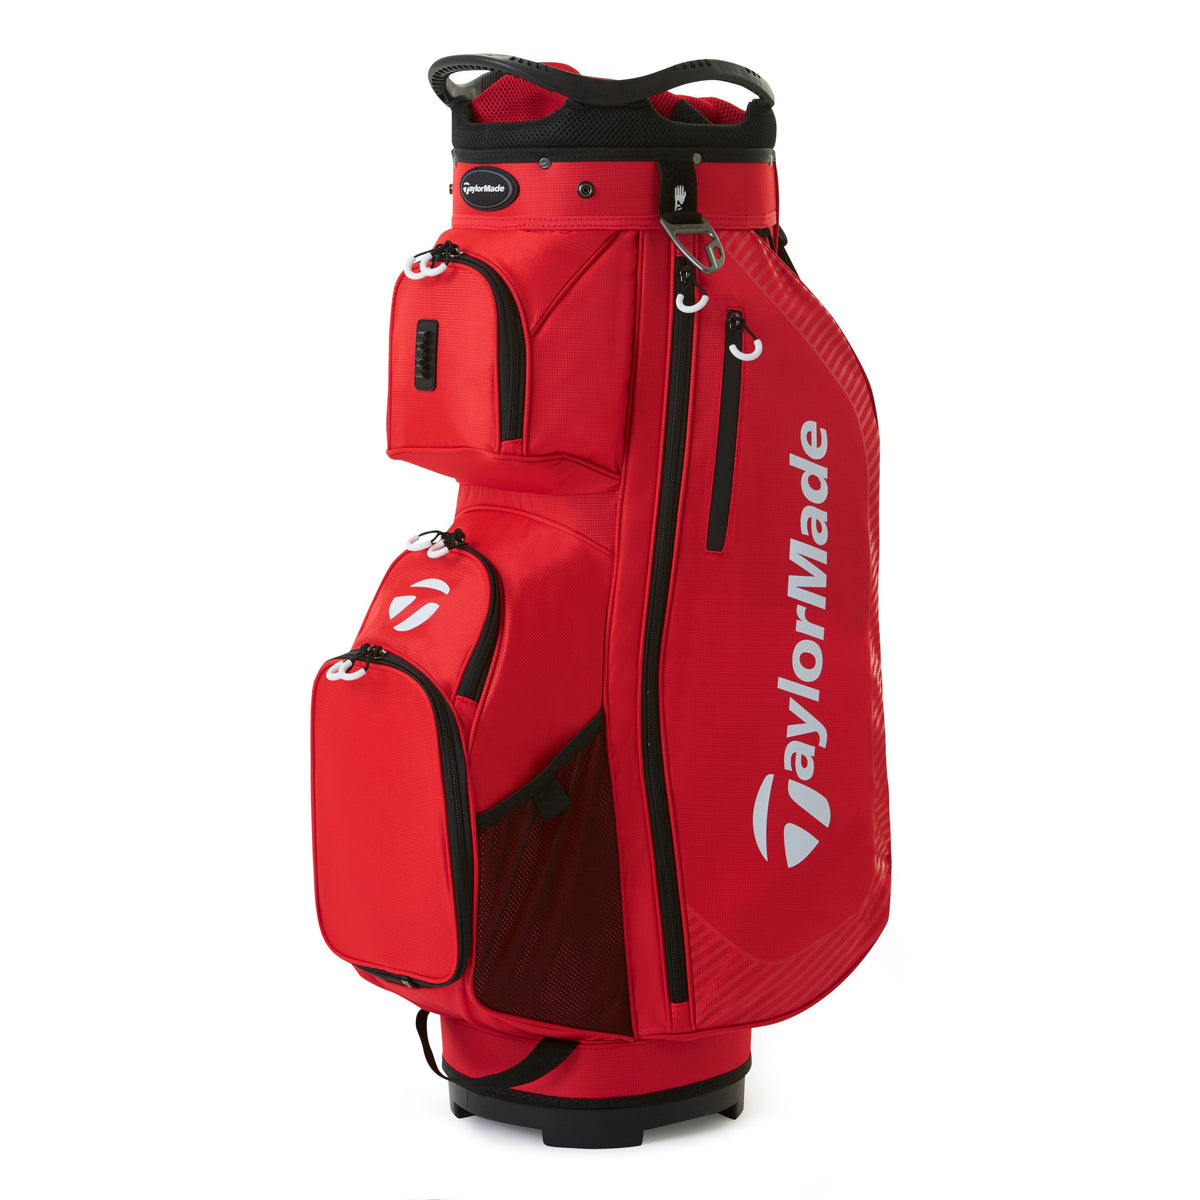 TaylorMade Pro Golf Cart Bag | Online Golf Shop – Galaxy Golf